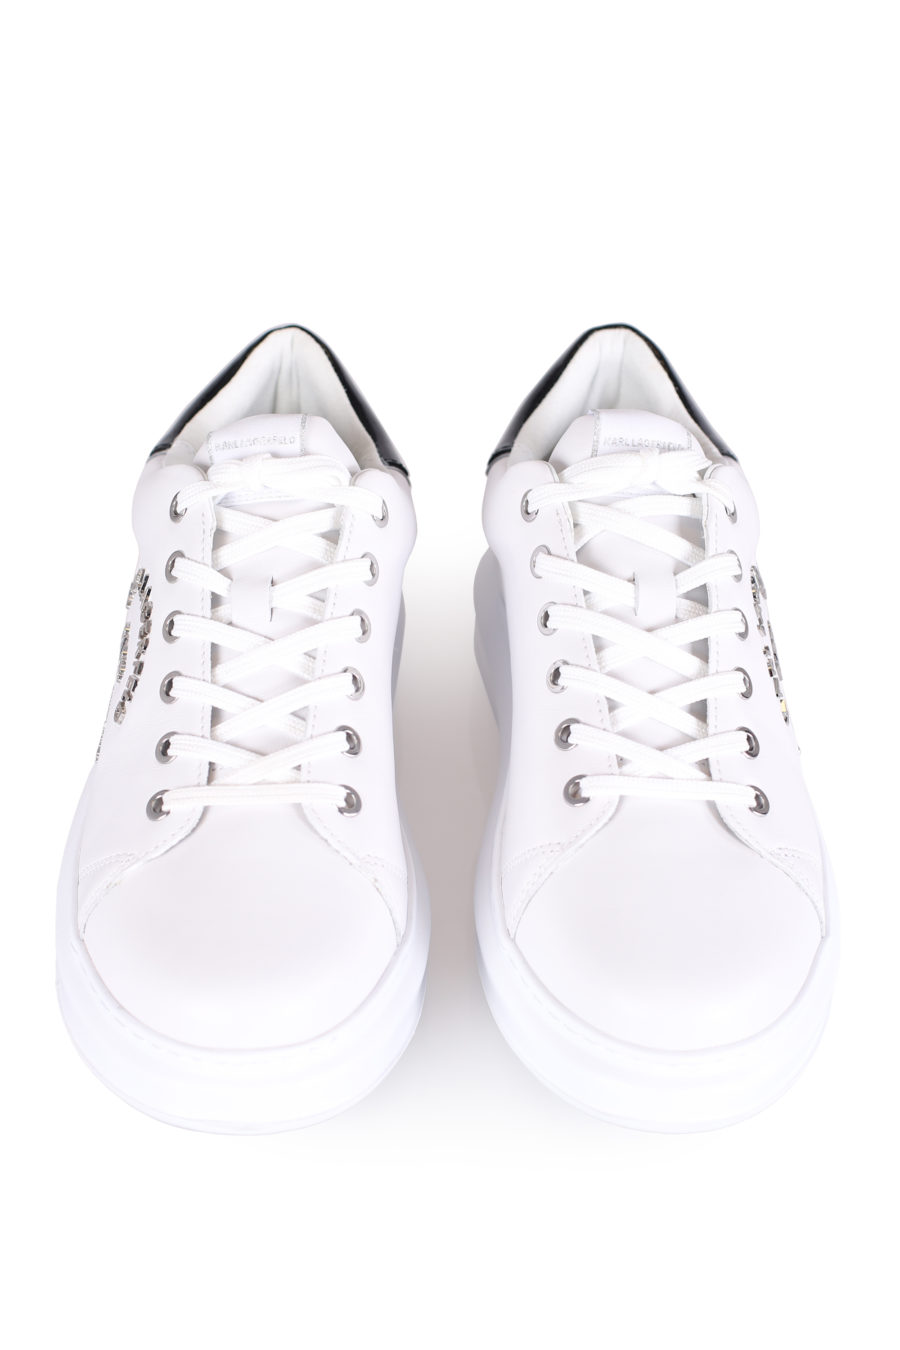 Zapatillas blancas con logotipo "Maison" plateado - IMG 0791